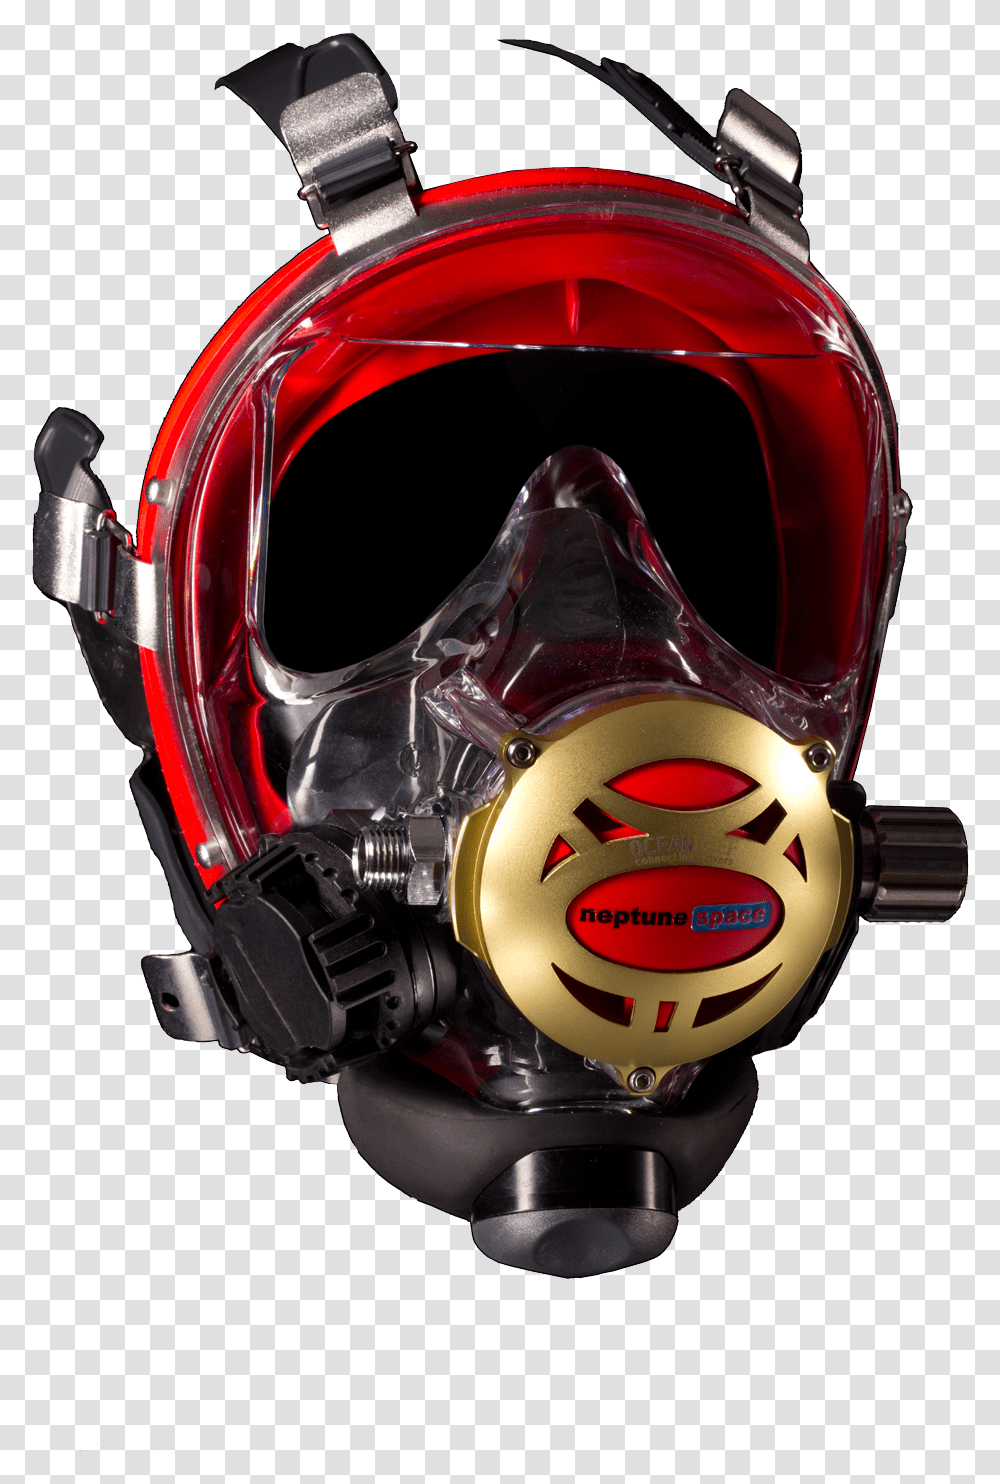 Ocean Reef Neptune Space Iron Mask Ocean Reef Neptune Space Predator, Helmet, Machine, Spoke Transparent Png